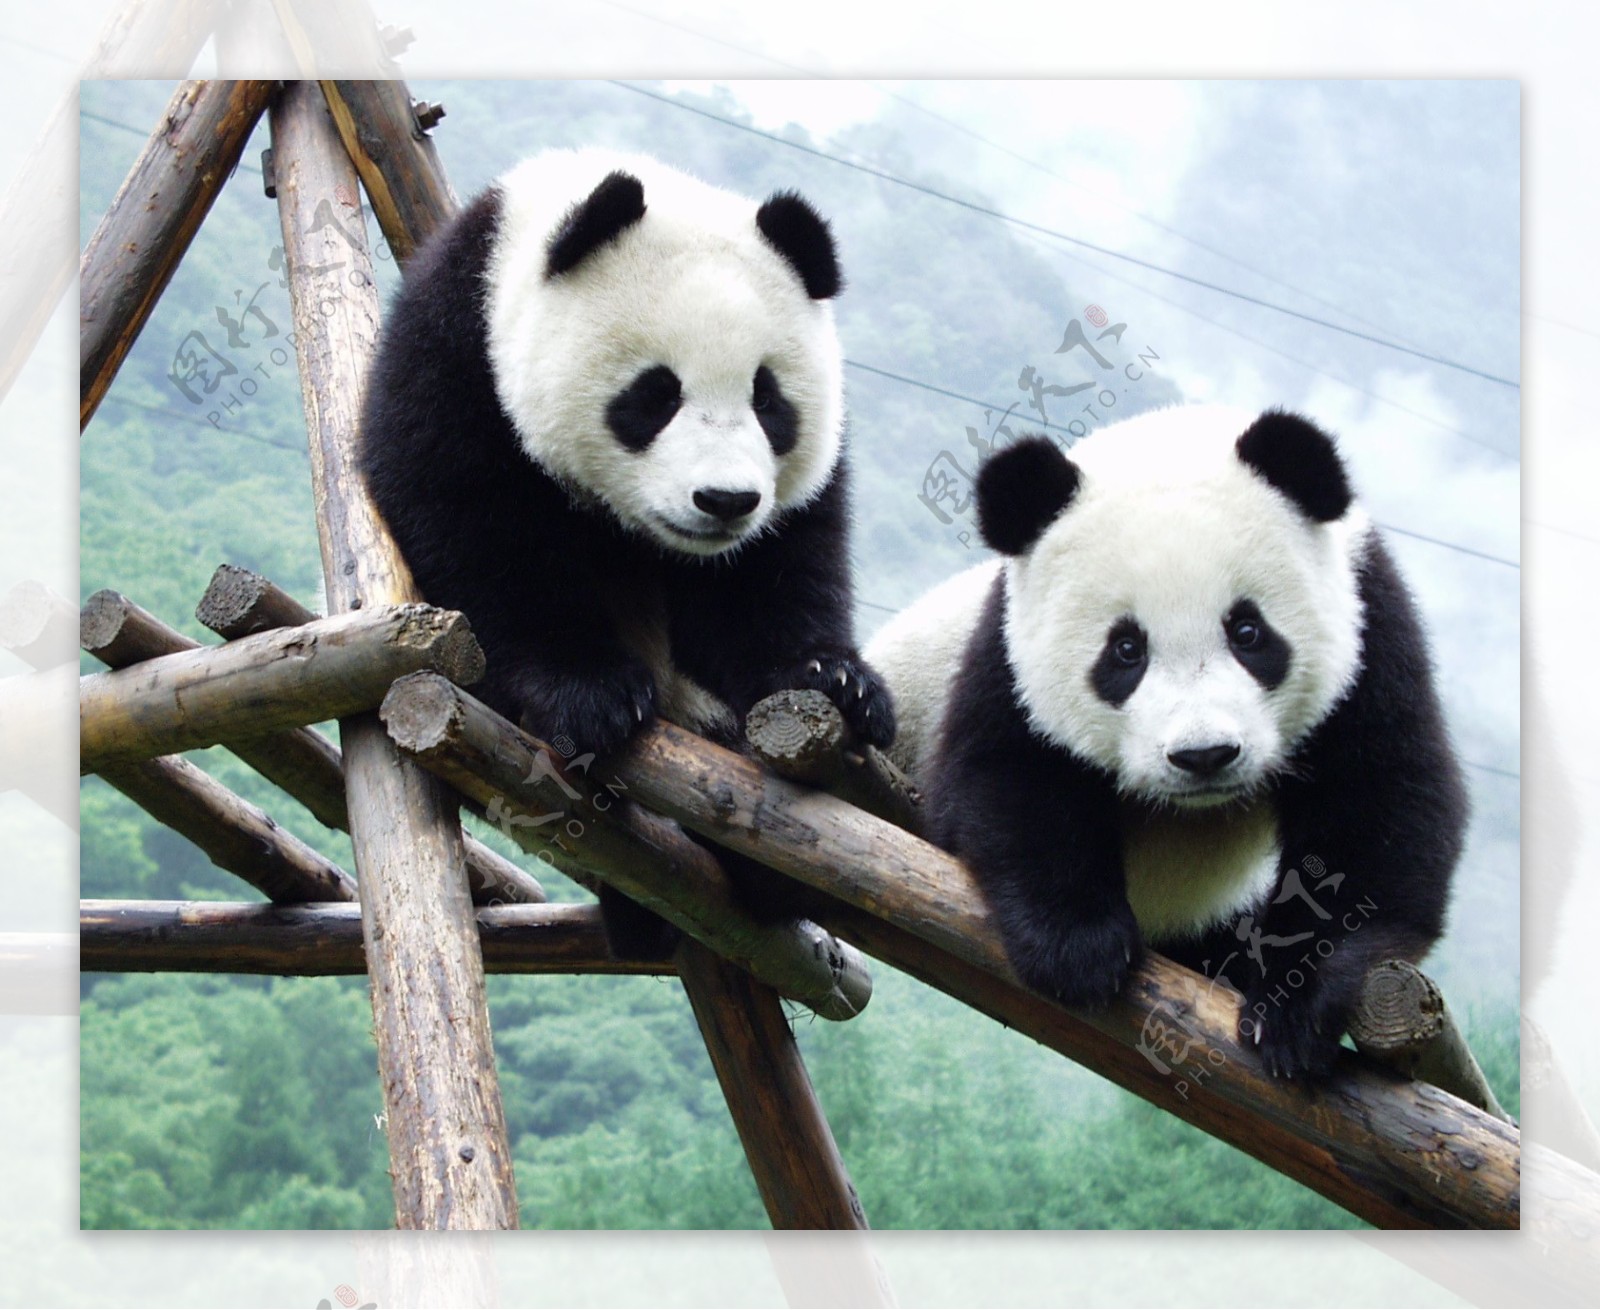 两只大熊猫图片